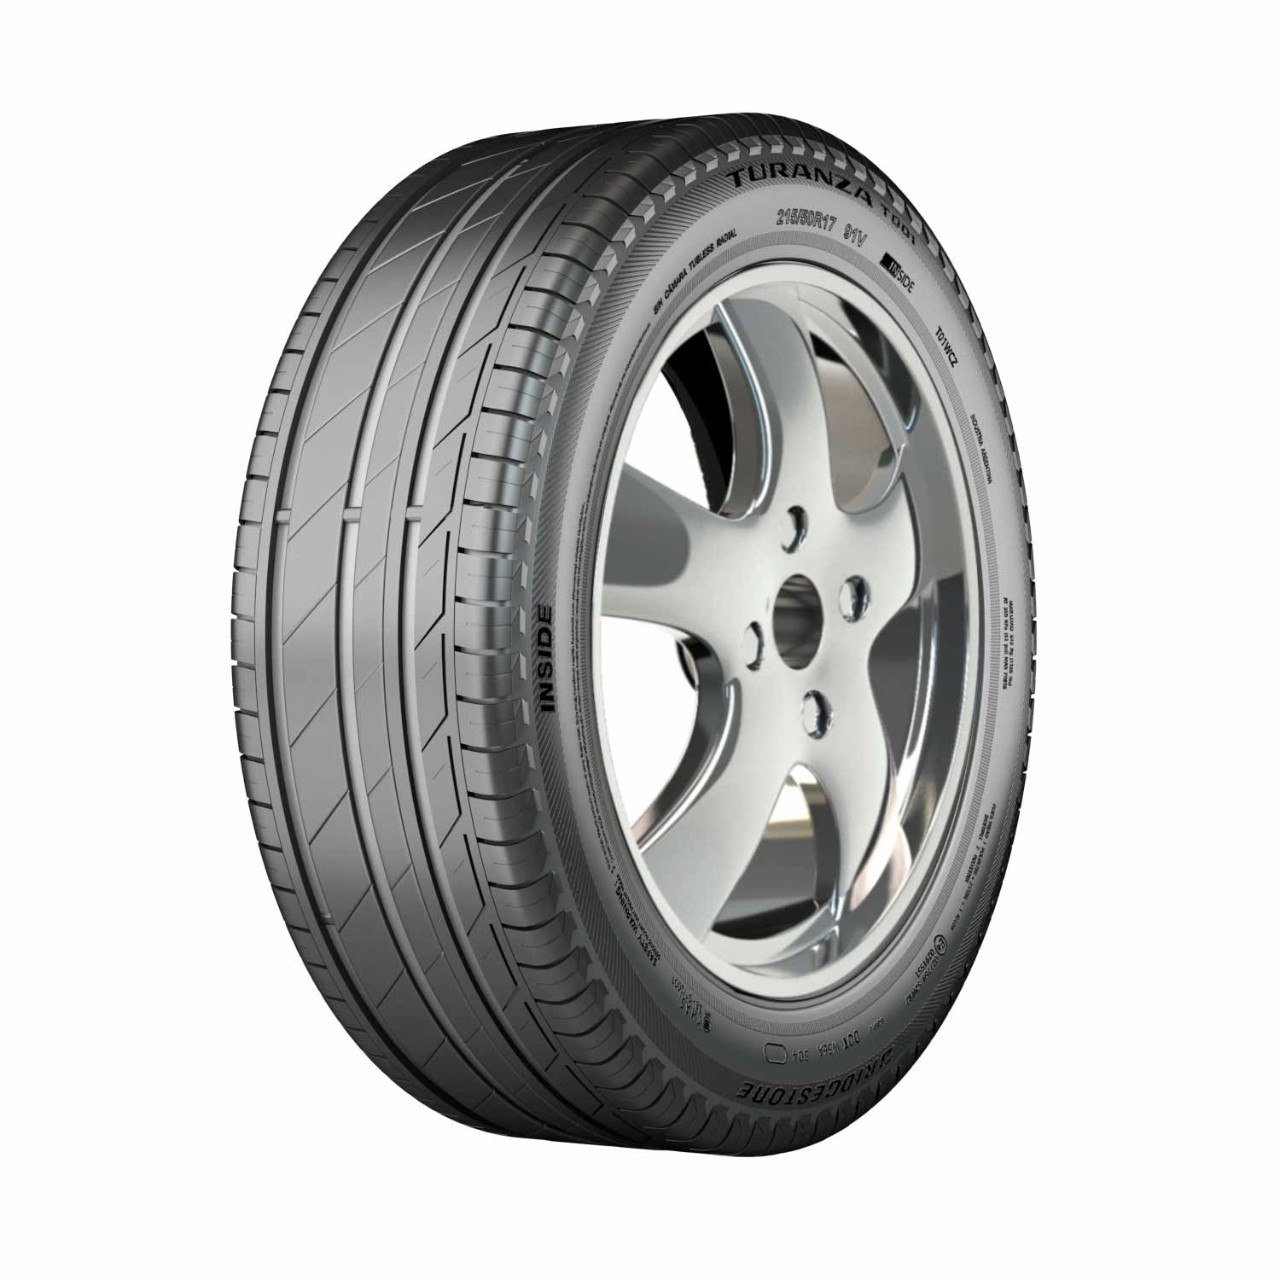 Pneu Bridgestone TURANZA T001 | Pneus Bridgestone Em Promoção